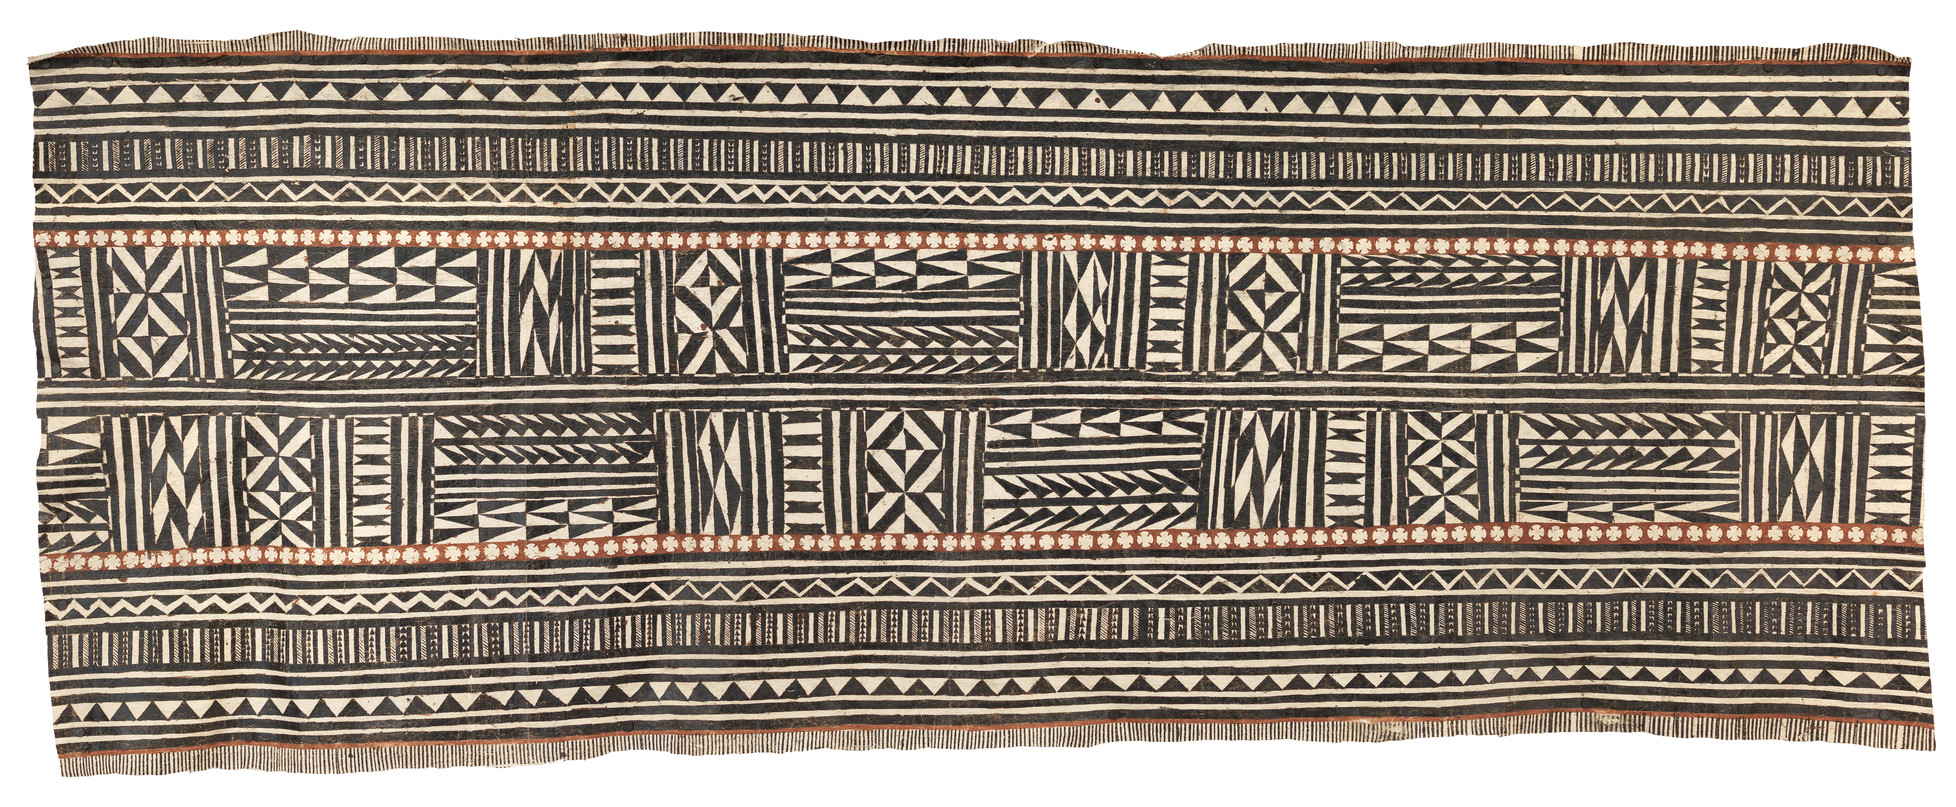 Fijian barkcloth (Masi bolabola), probably Cakaudrove from the mid-19th century